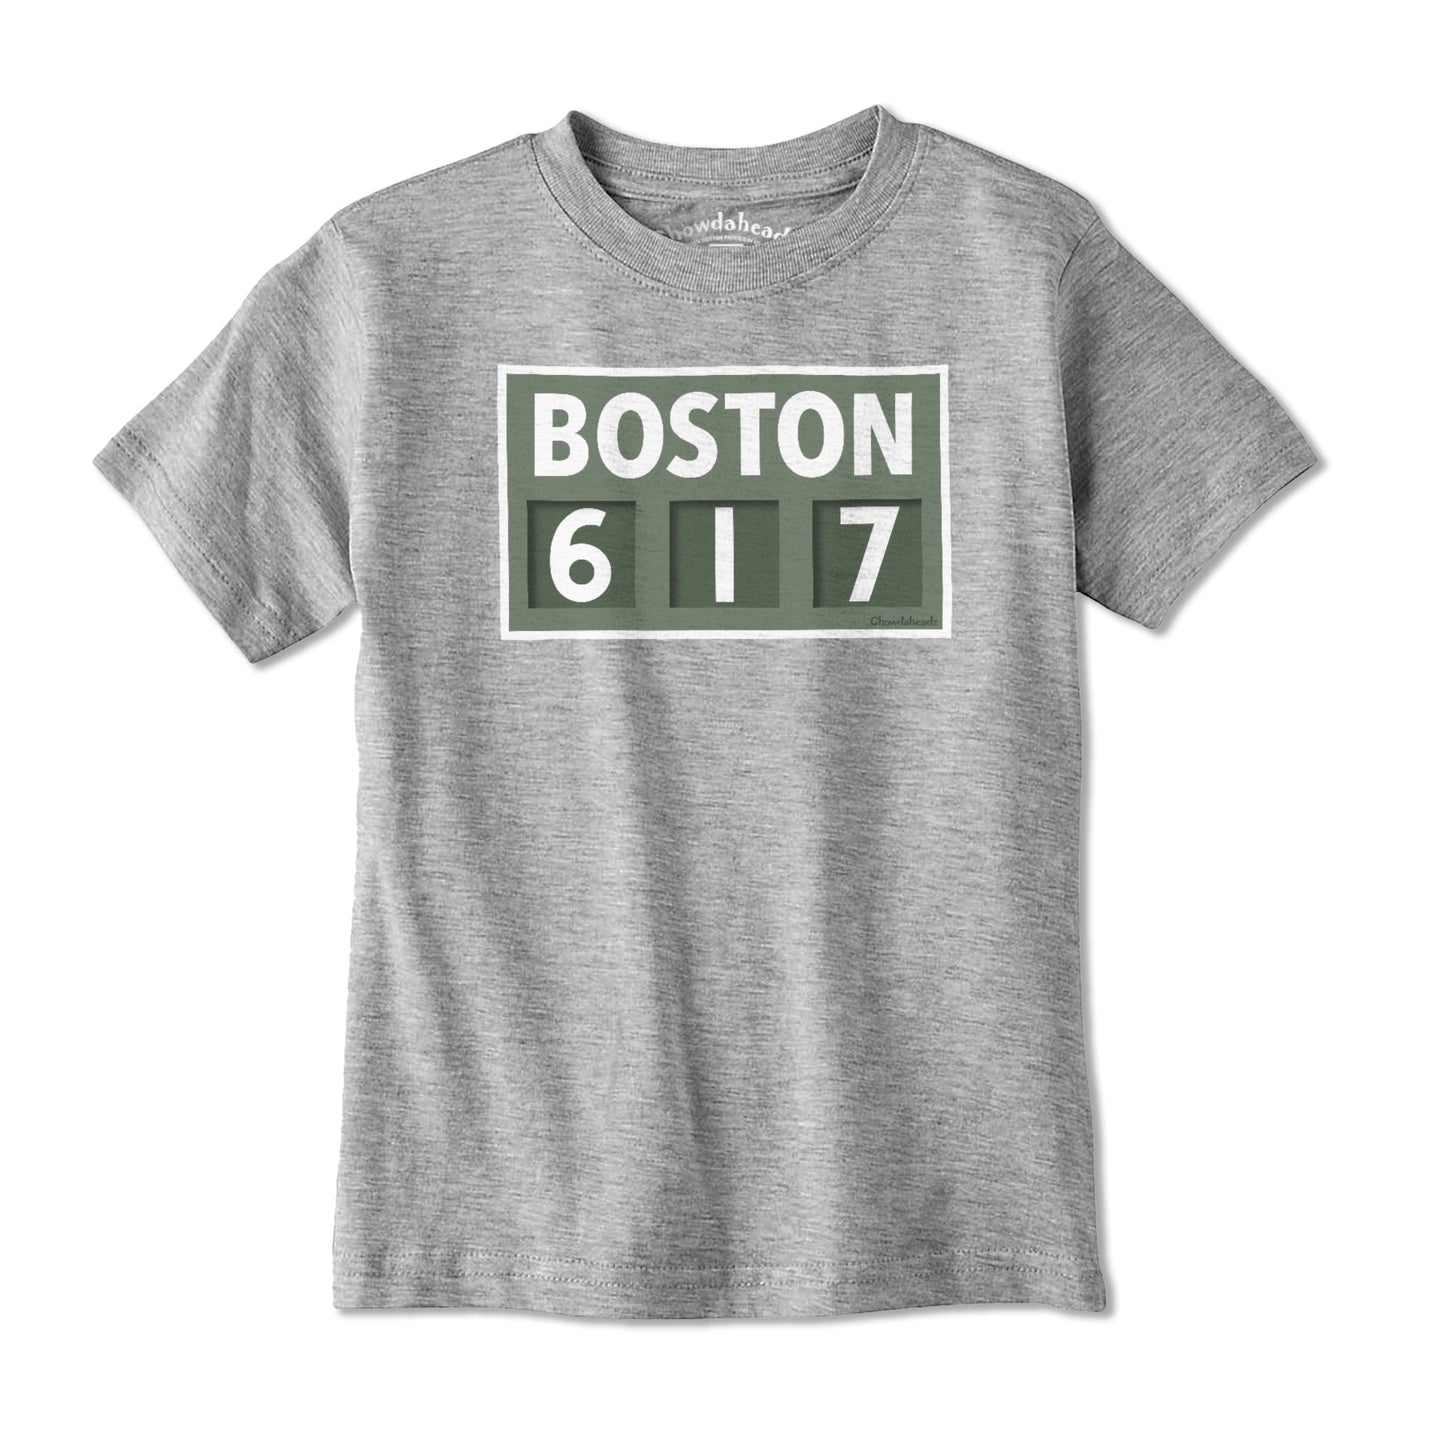 Boston 617 Scoreboard Youth T-Shirt - Chowdaheadz